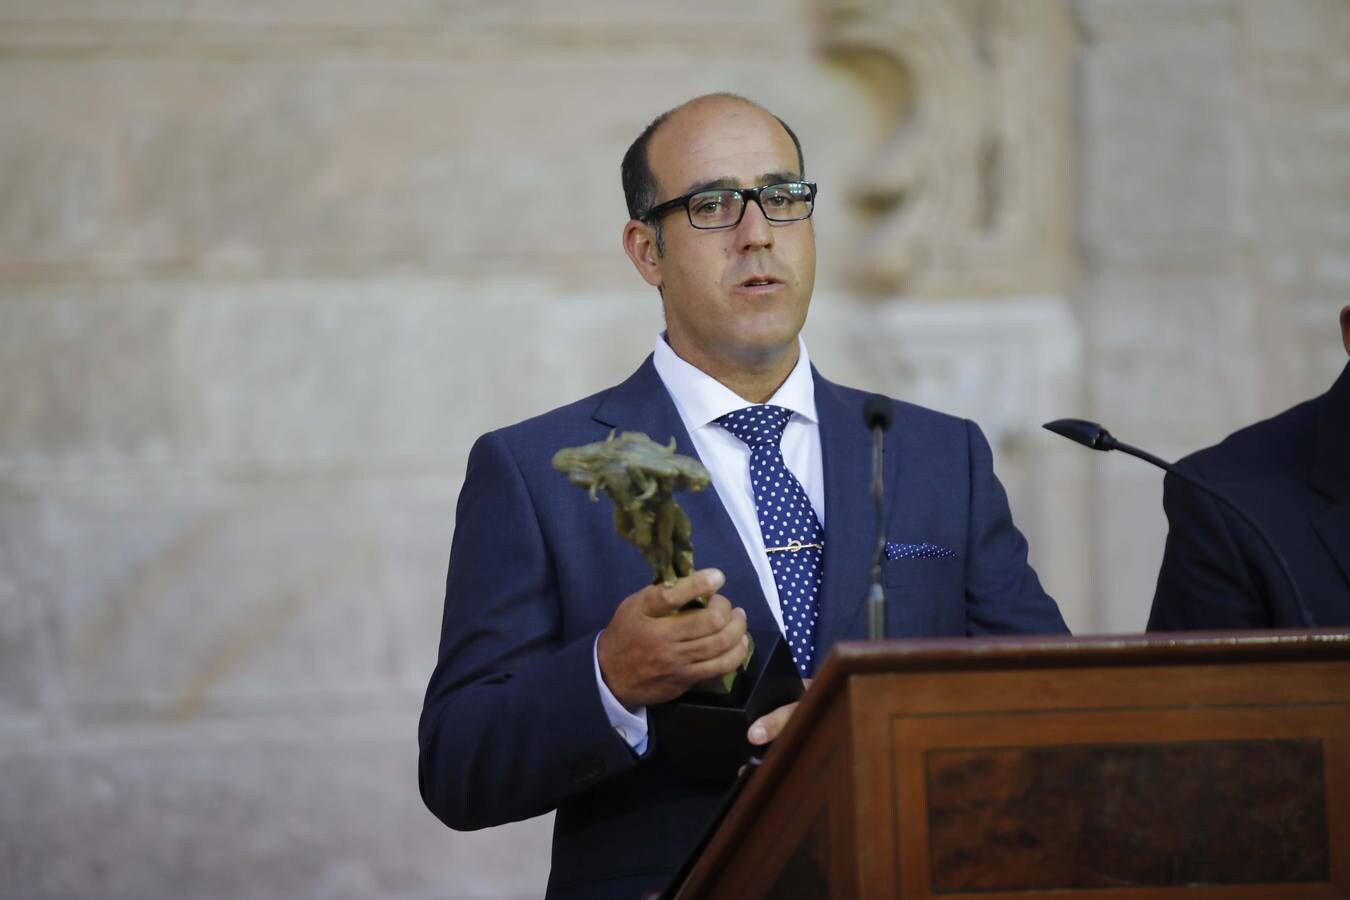 Entrega de los Premios «Puerta del Príncipe» en el Real Alcázar de Sevilla